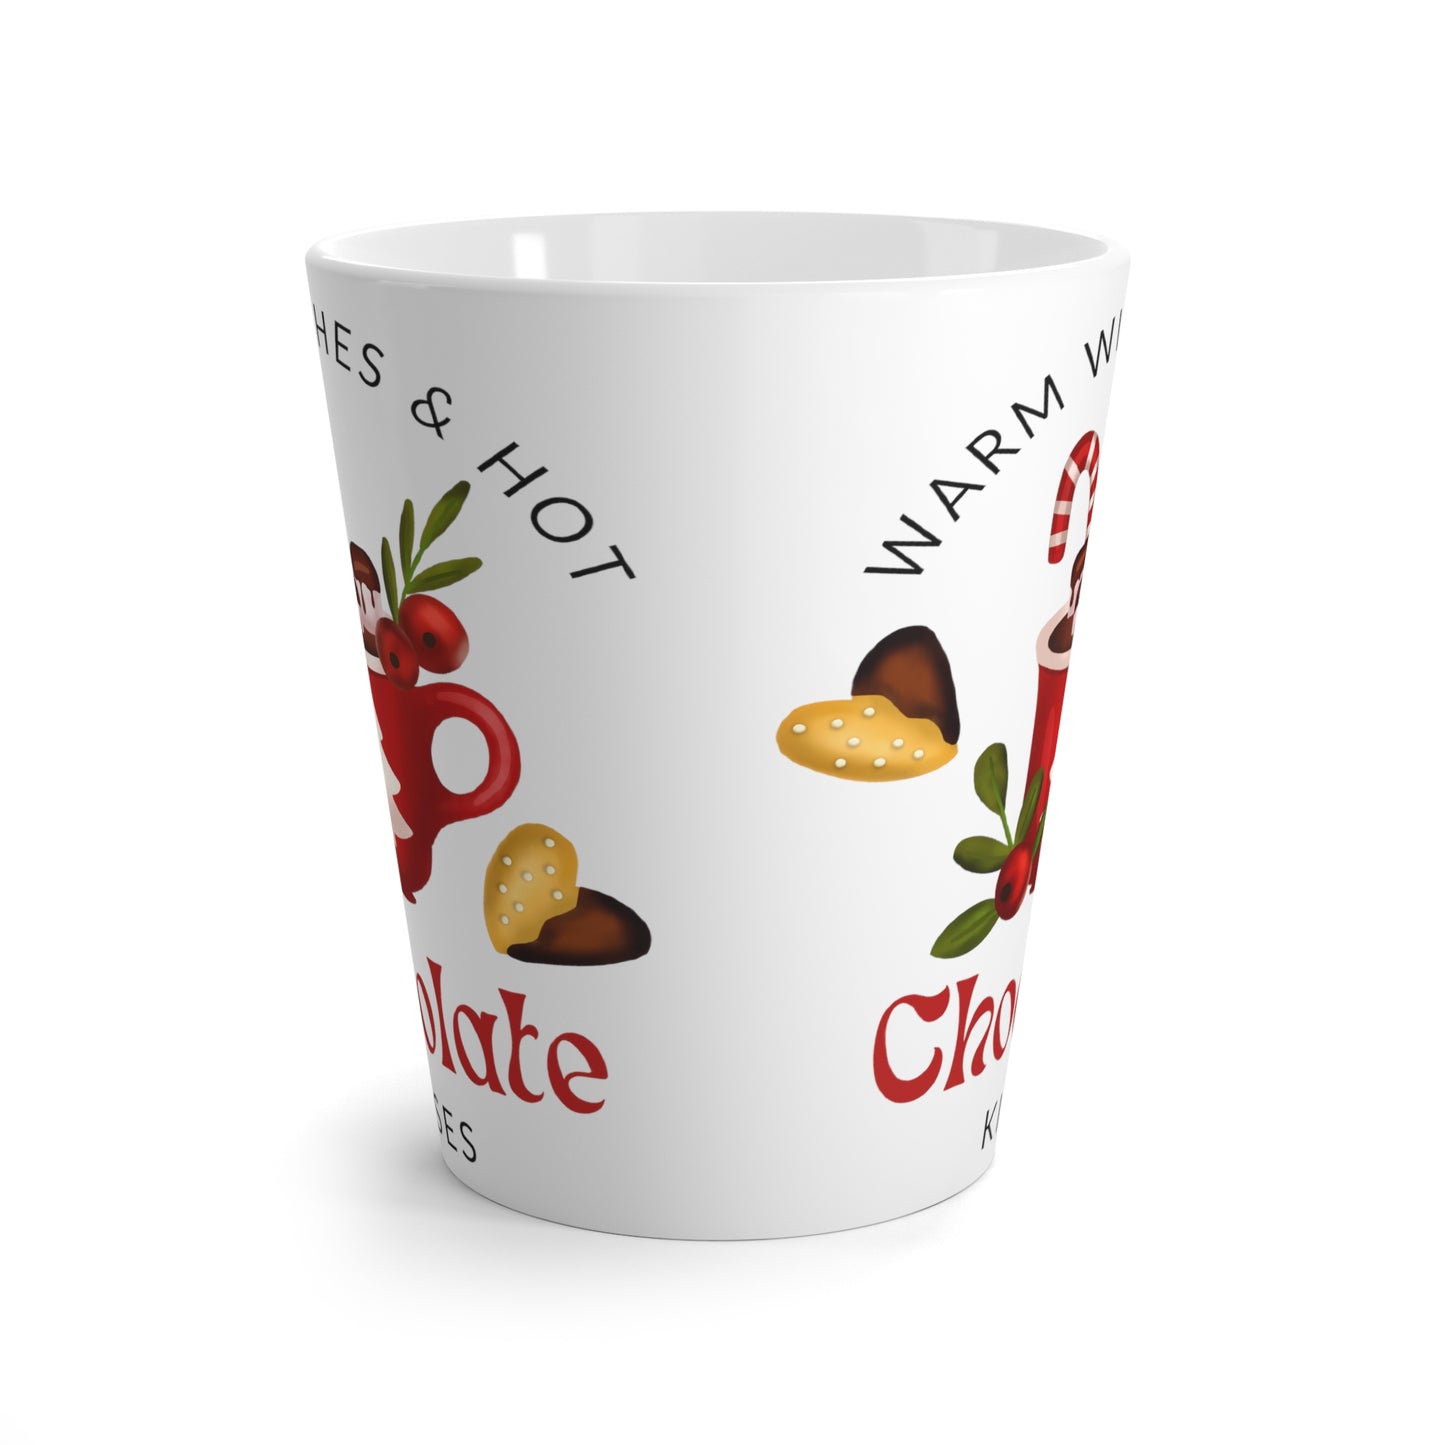 Warm Wishes for Christmas Printed Latte Mug, 12oz